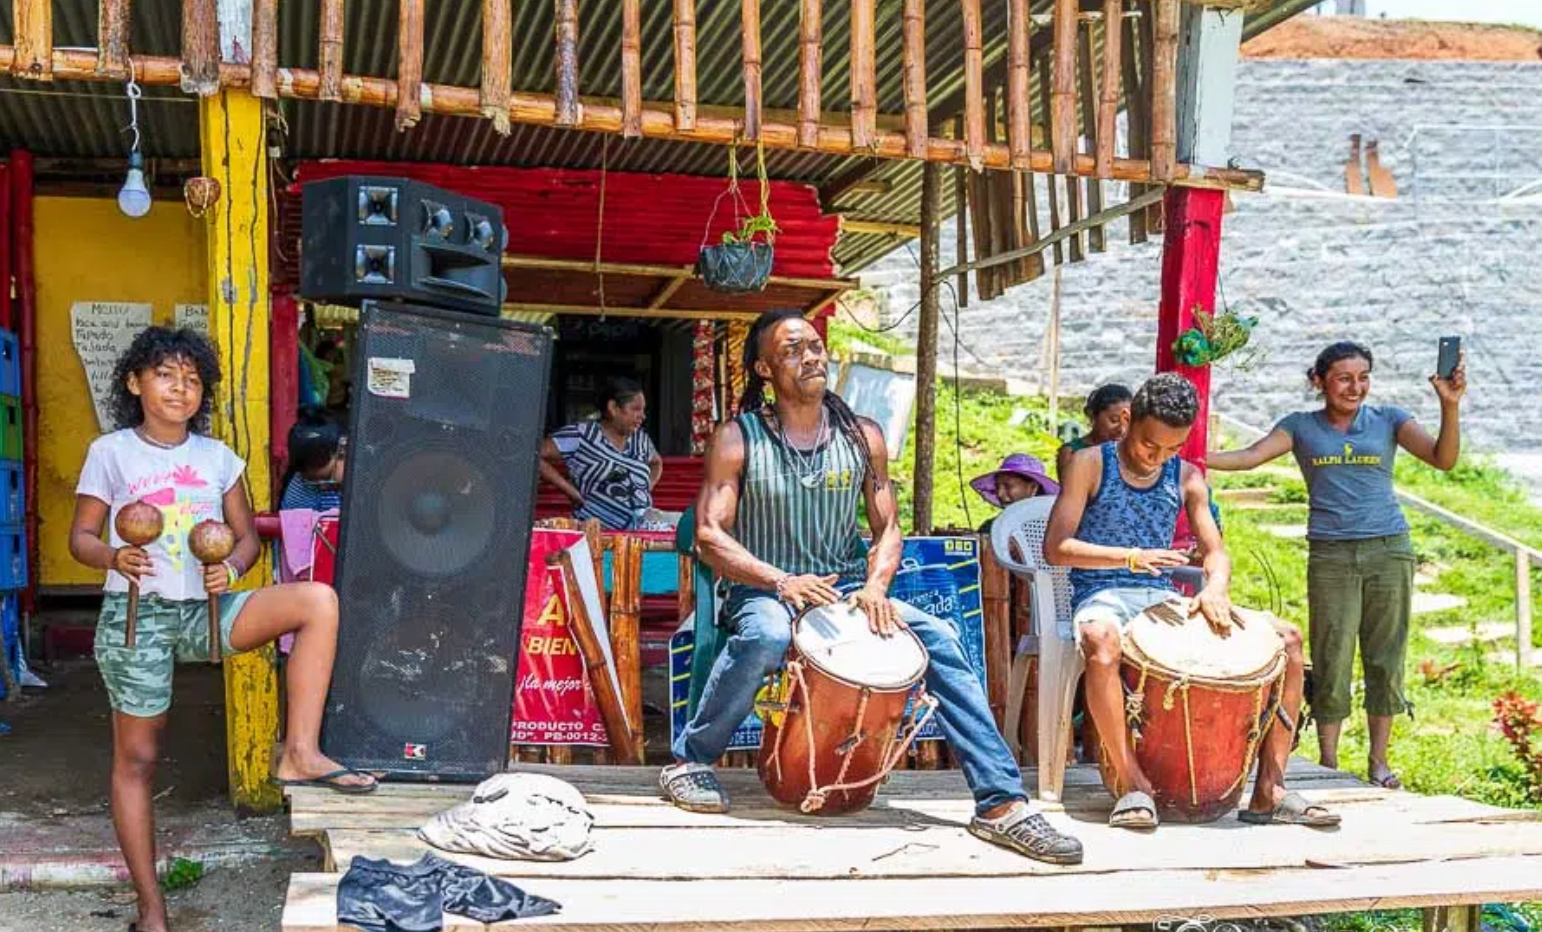 Traditional Garifuna band playing at a park.